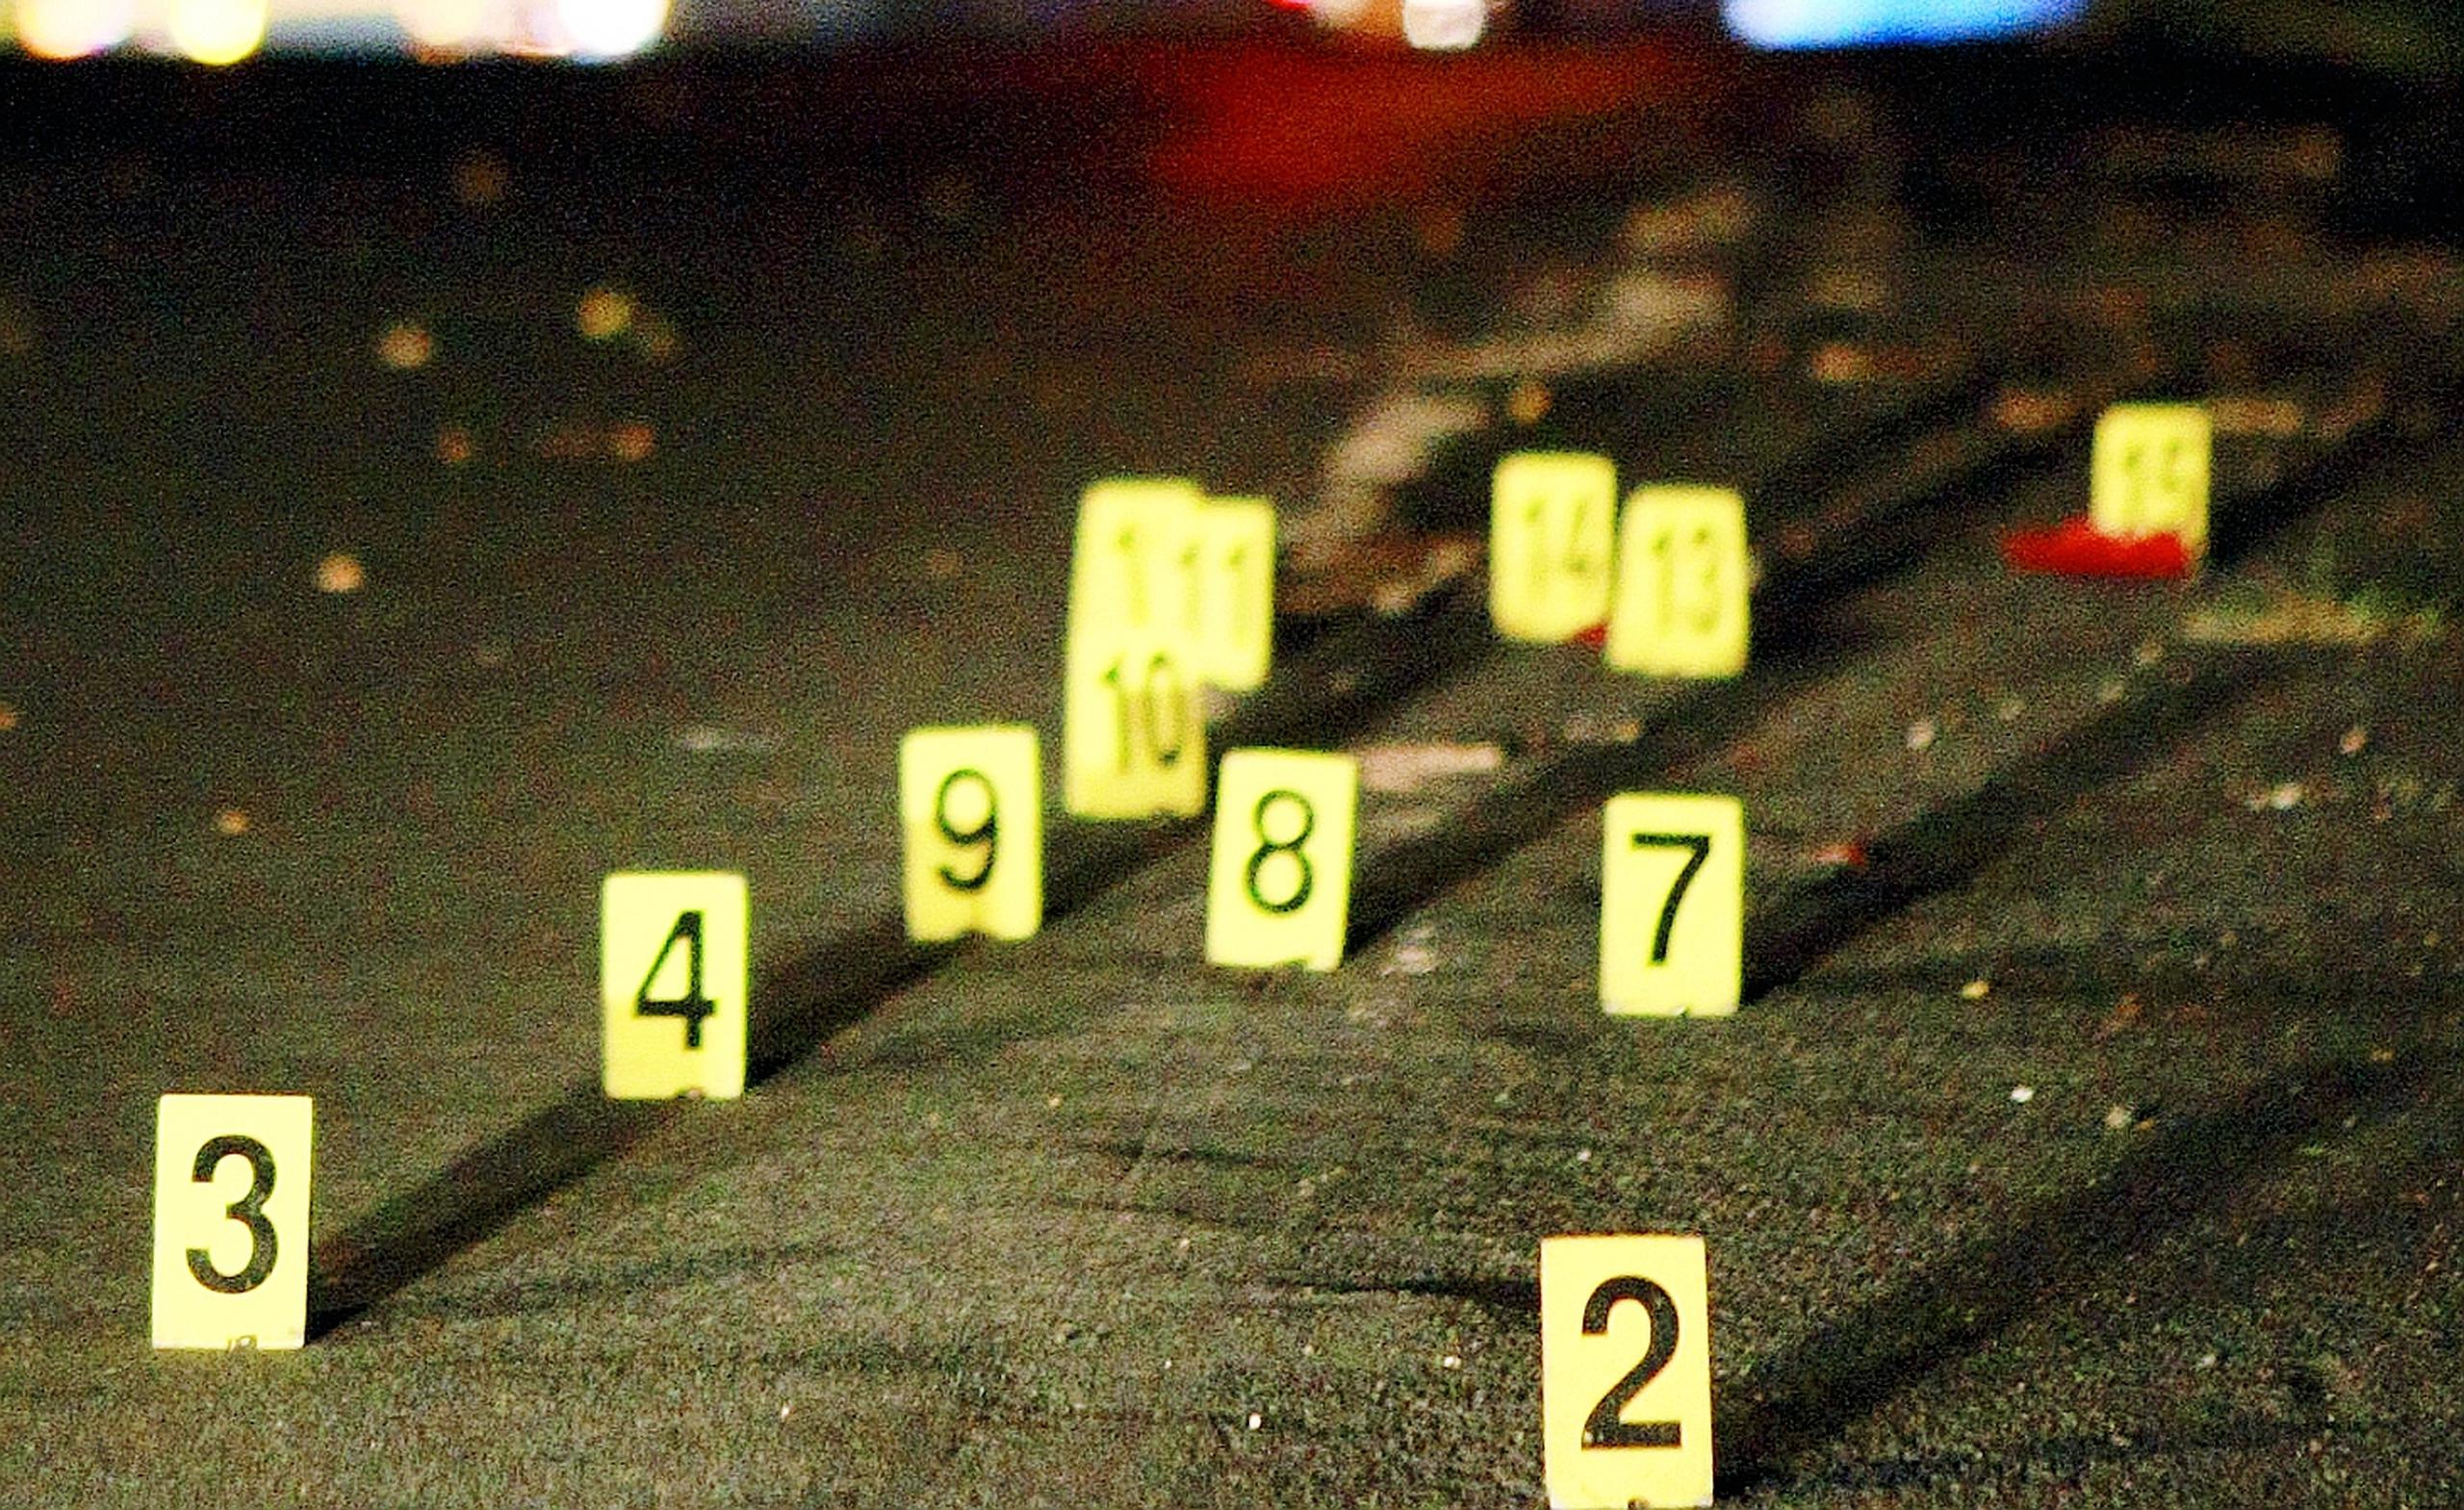 Dos asesinatos se reportaron durante la noche de ayer, jueves, en Puerto Nuevo y Las Piedras. ( Archivo//Lino M Prieto)
-----

-----